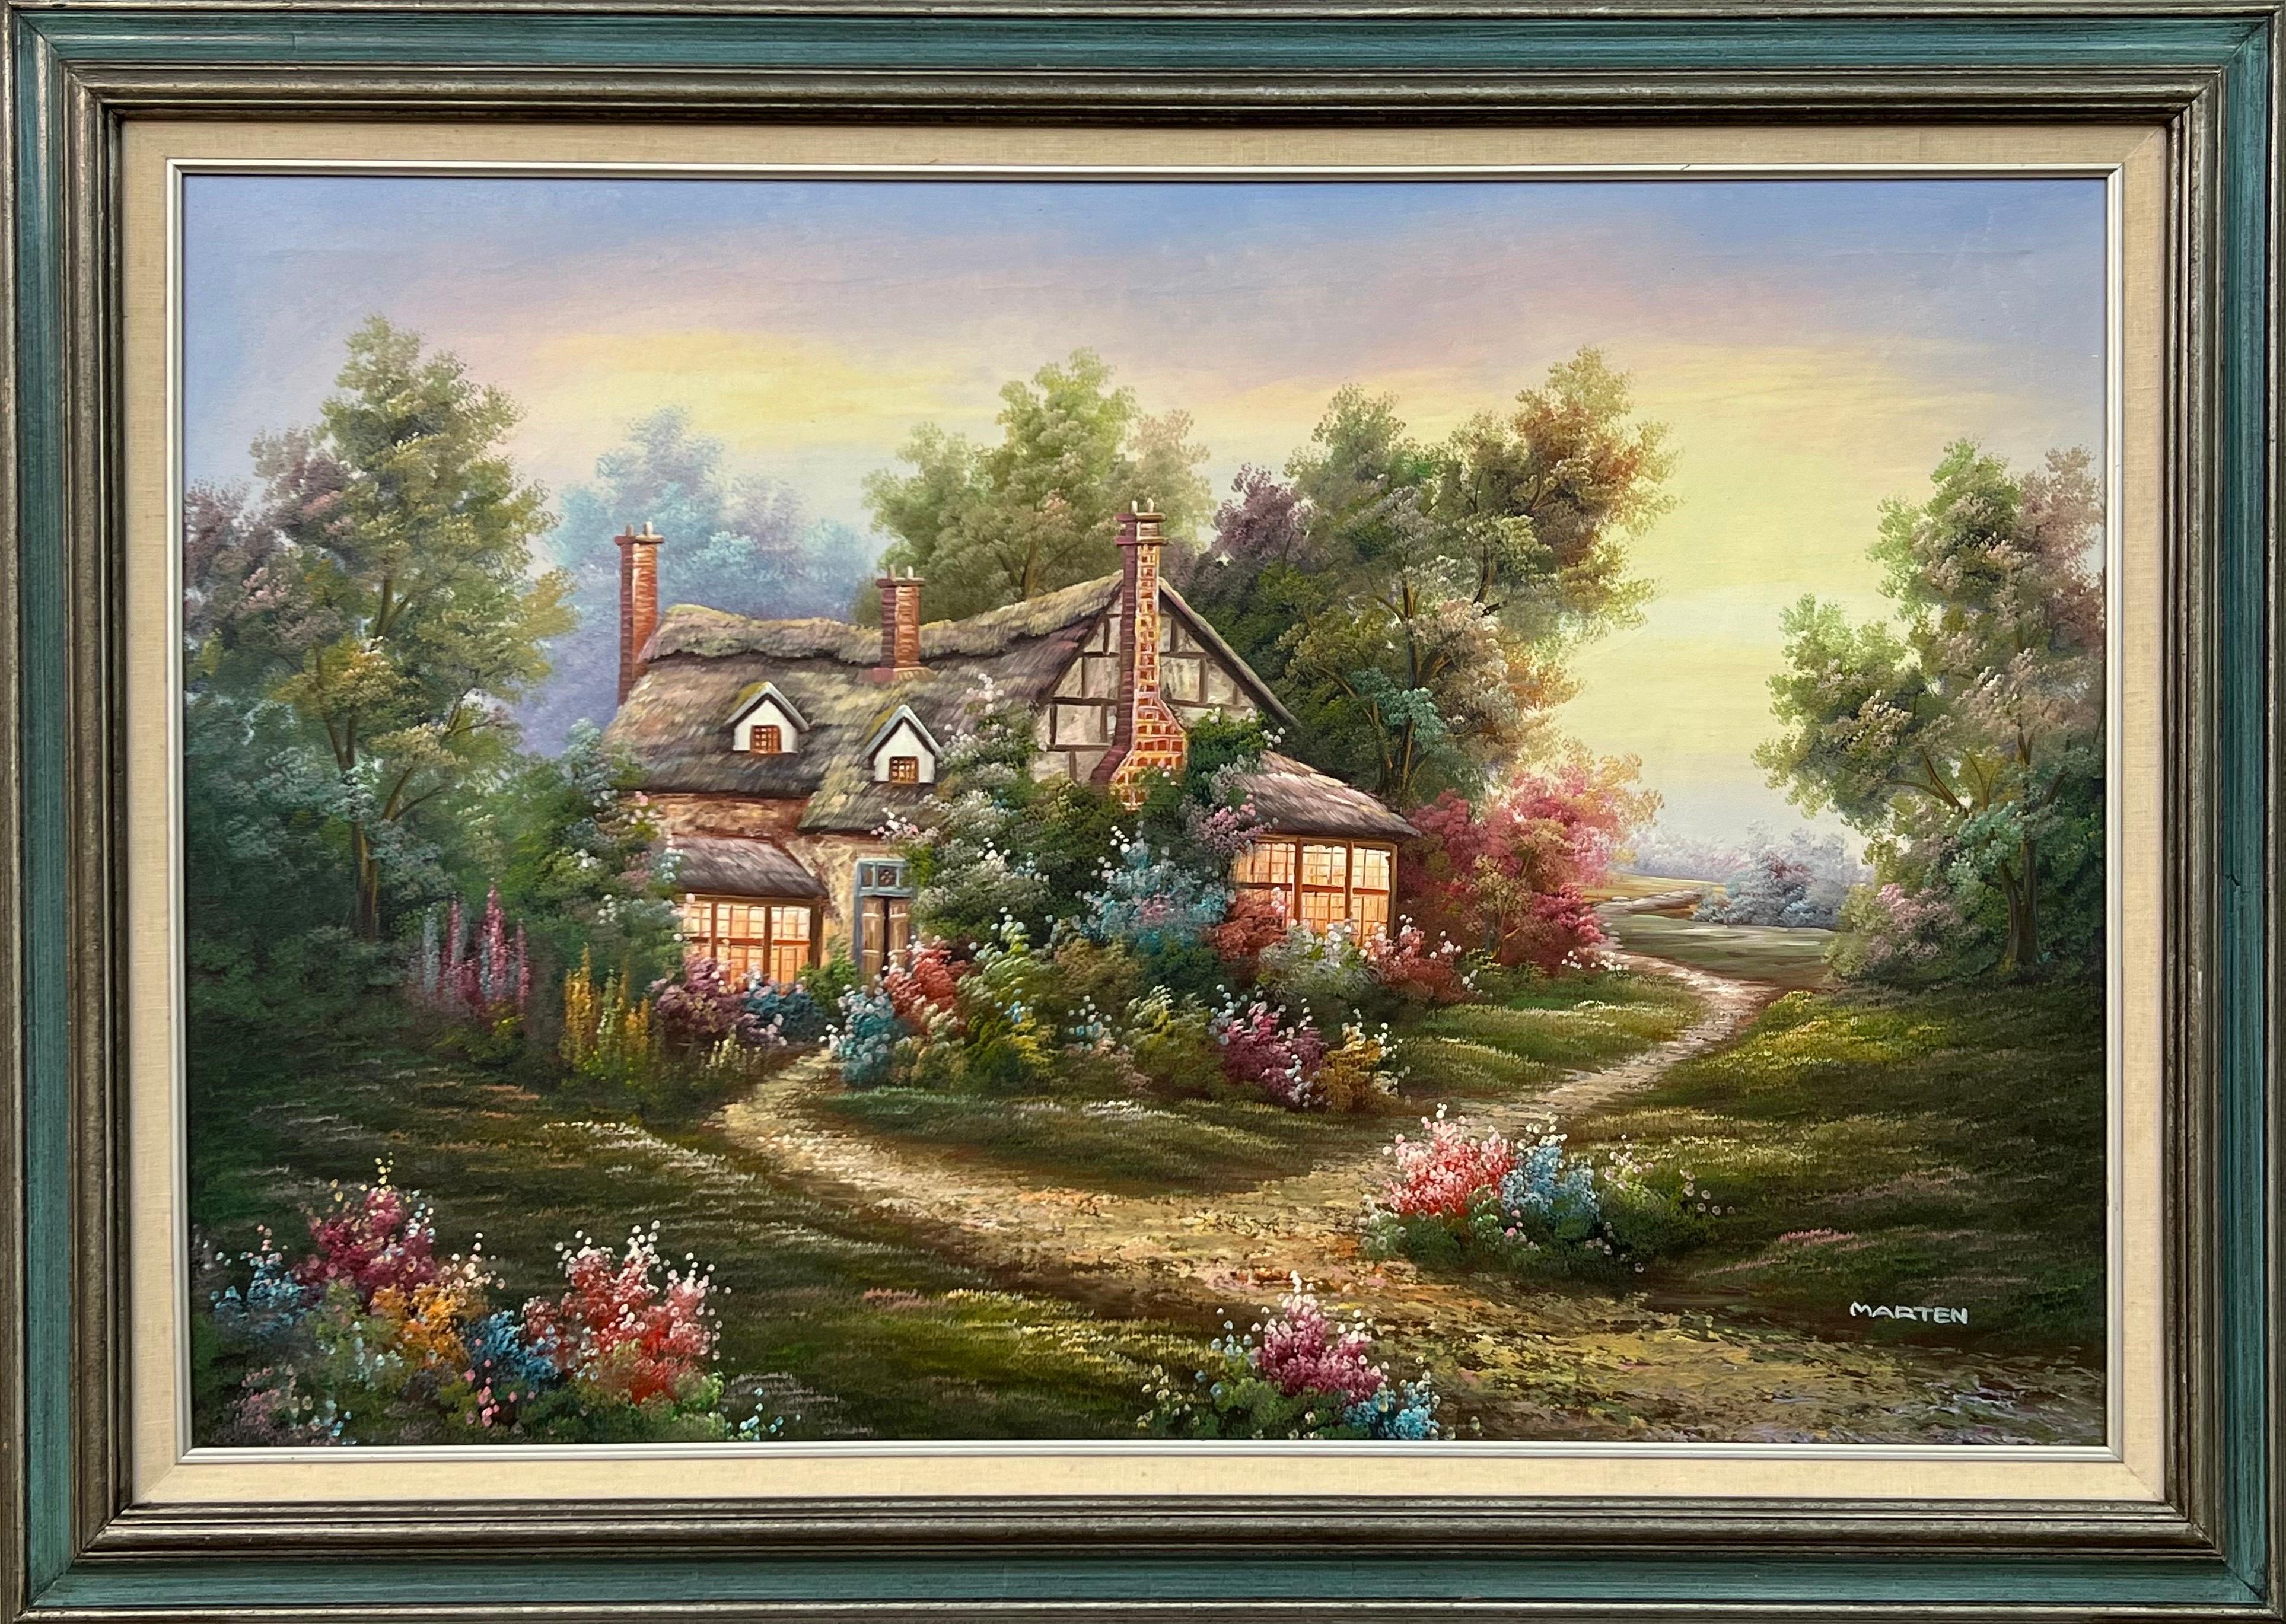 Marten Landscape Painting – Vintage Ölgemälde von Fantasy Cottage in den Wäldern mit Blumen & Gärten